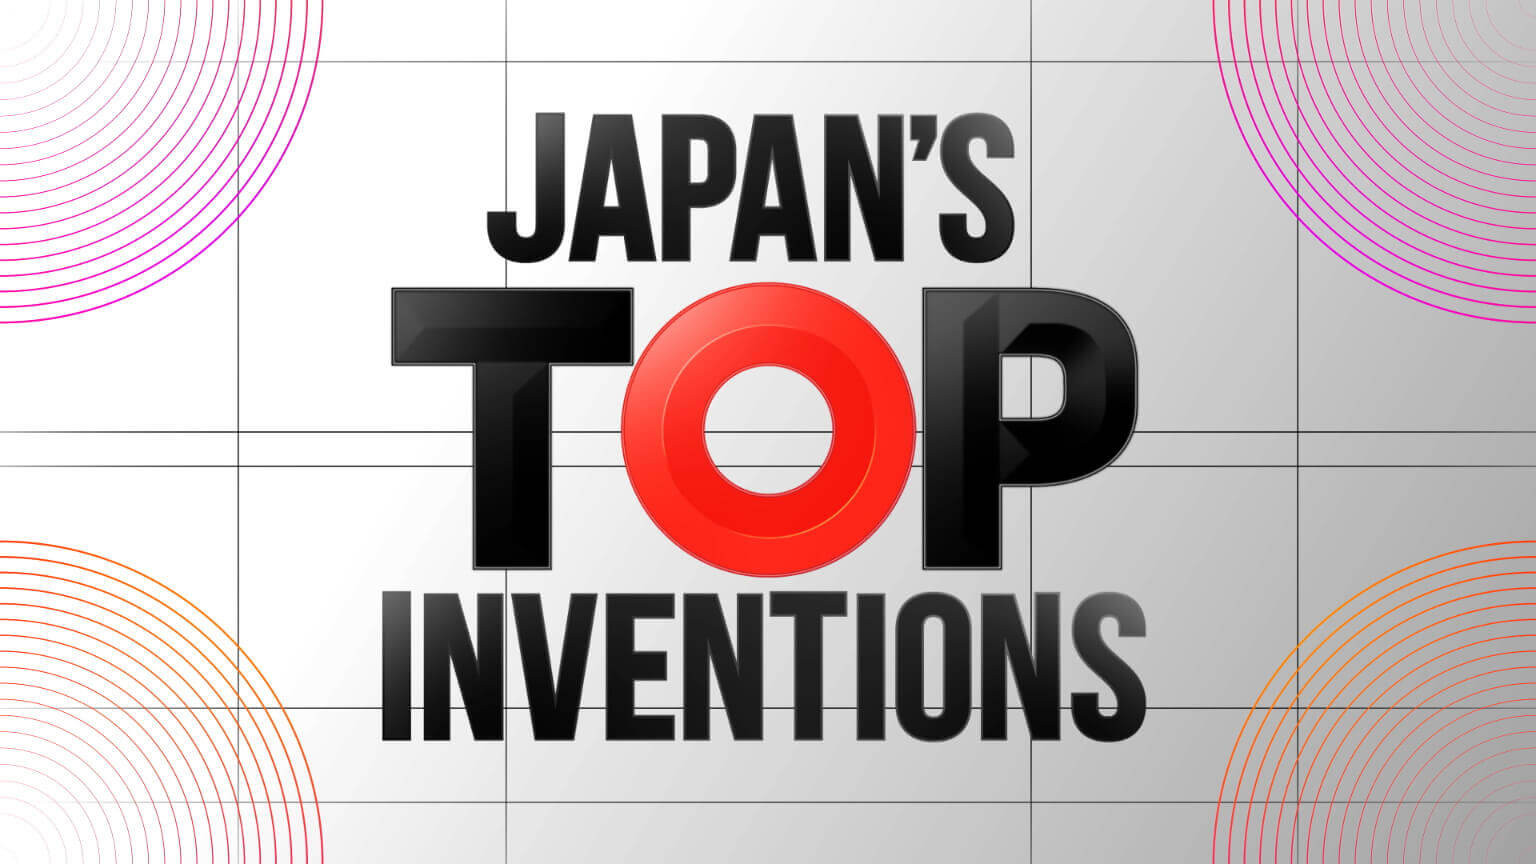 日本頂尖發明
Japan's Top Inventions